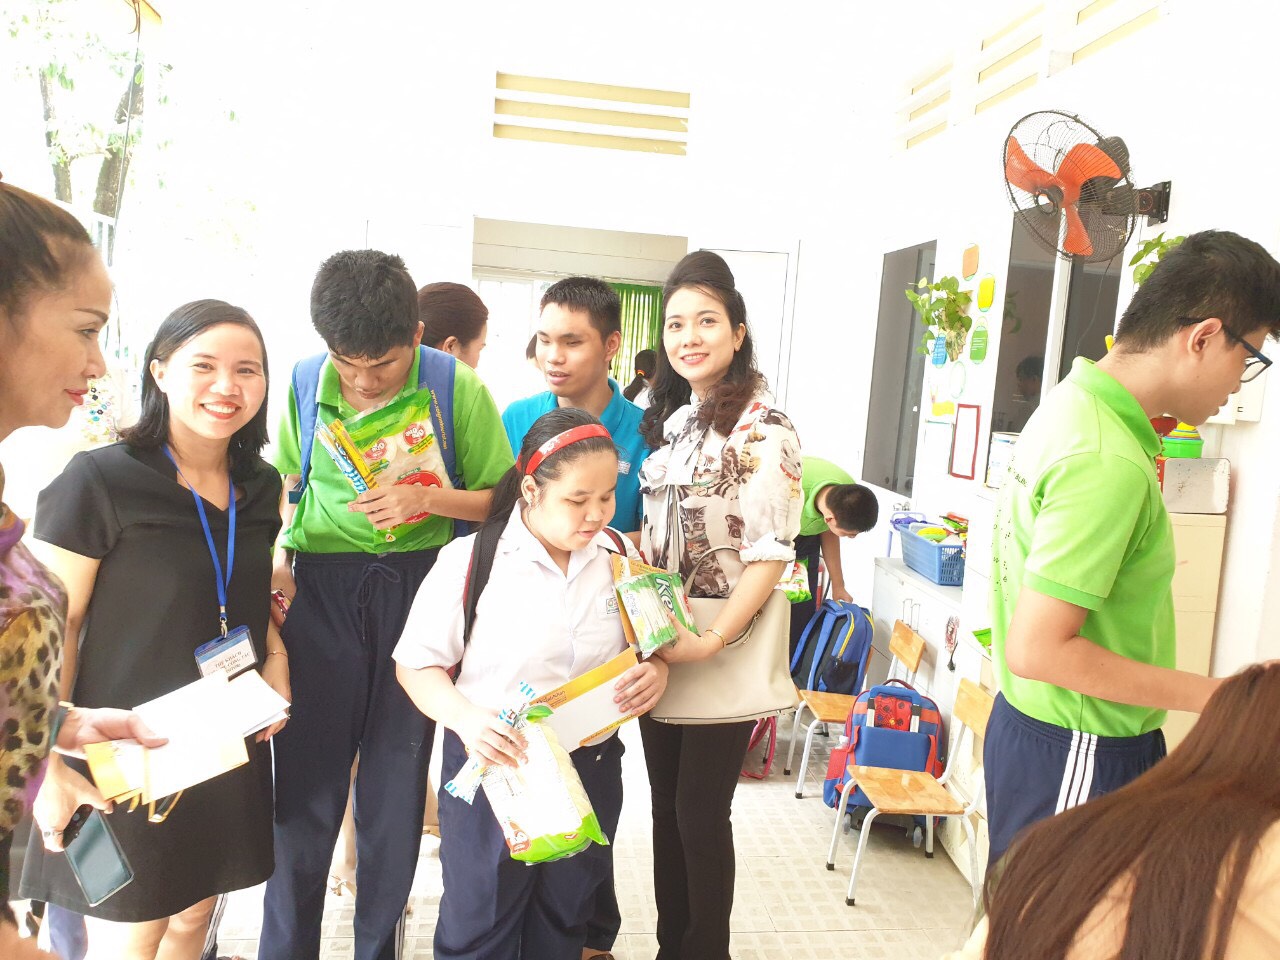 Hoa khôi Nữ Doanh Nhân Tài Sắc 2019 Đặng Thị Minh Nguyệt trao bánh và phong bì cho một em học sinh nghèo